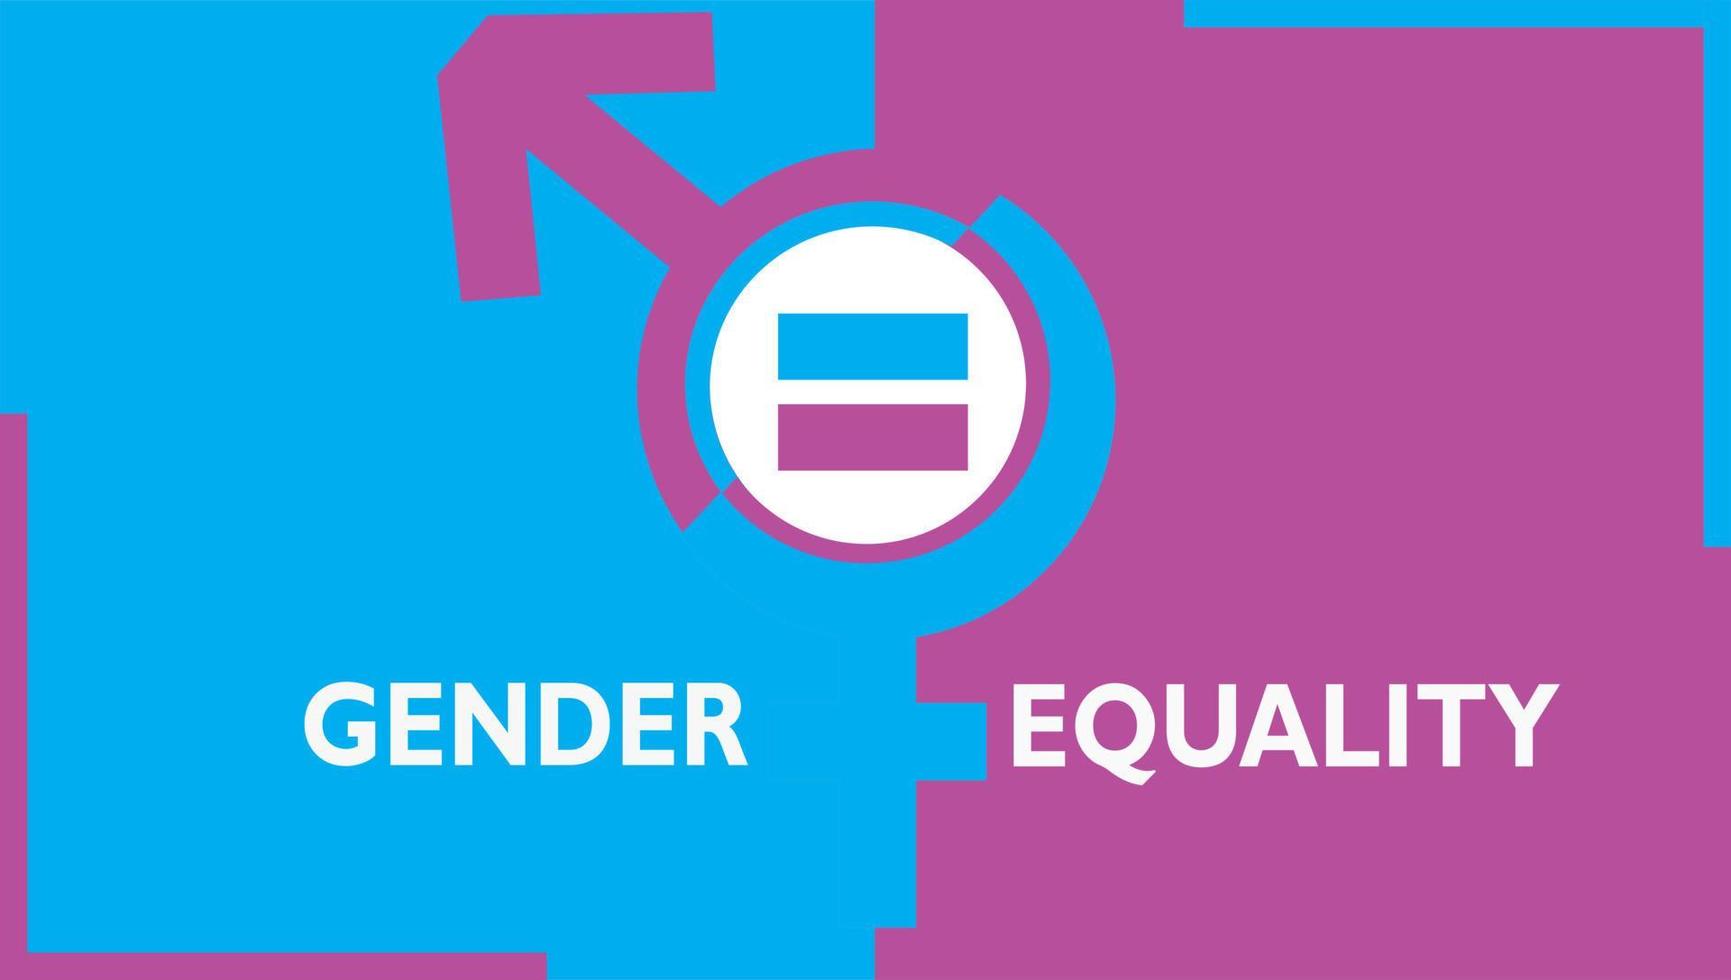 ilustração conceitual de igualdade de gênero, igualdade de oportunidades e direitos masculinos e femininos vetor